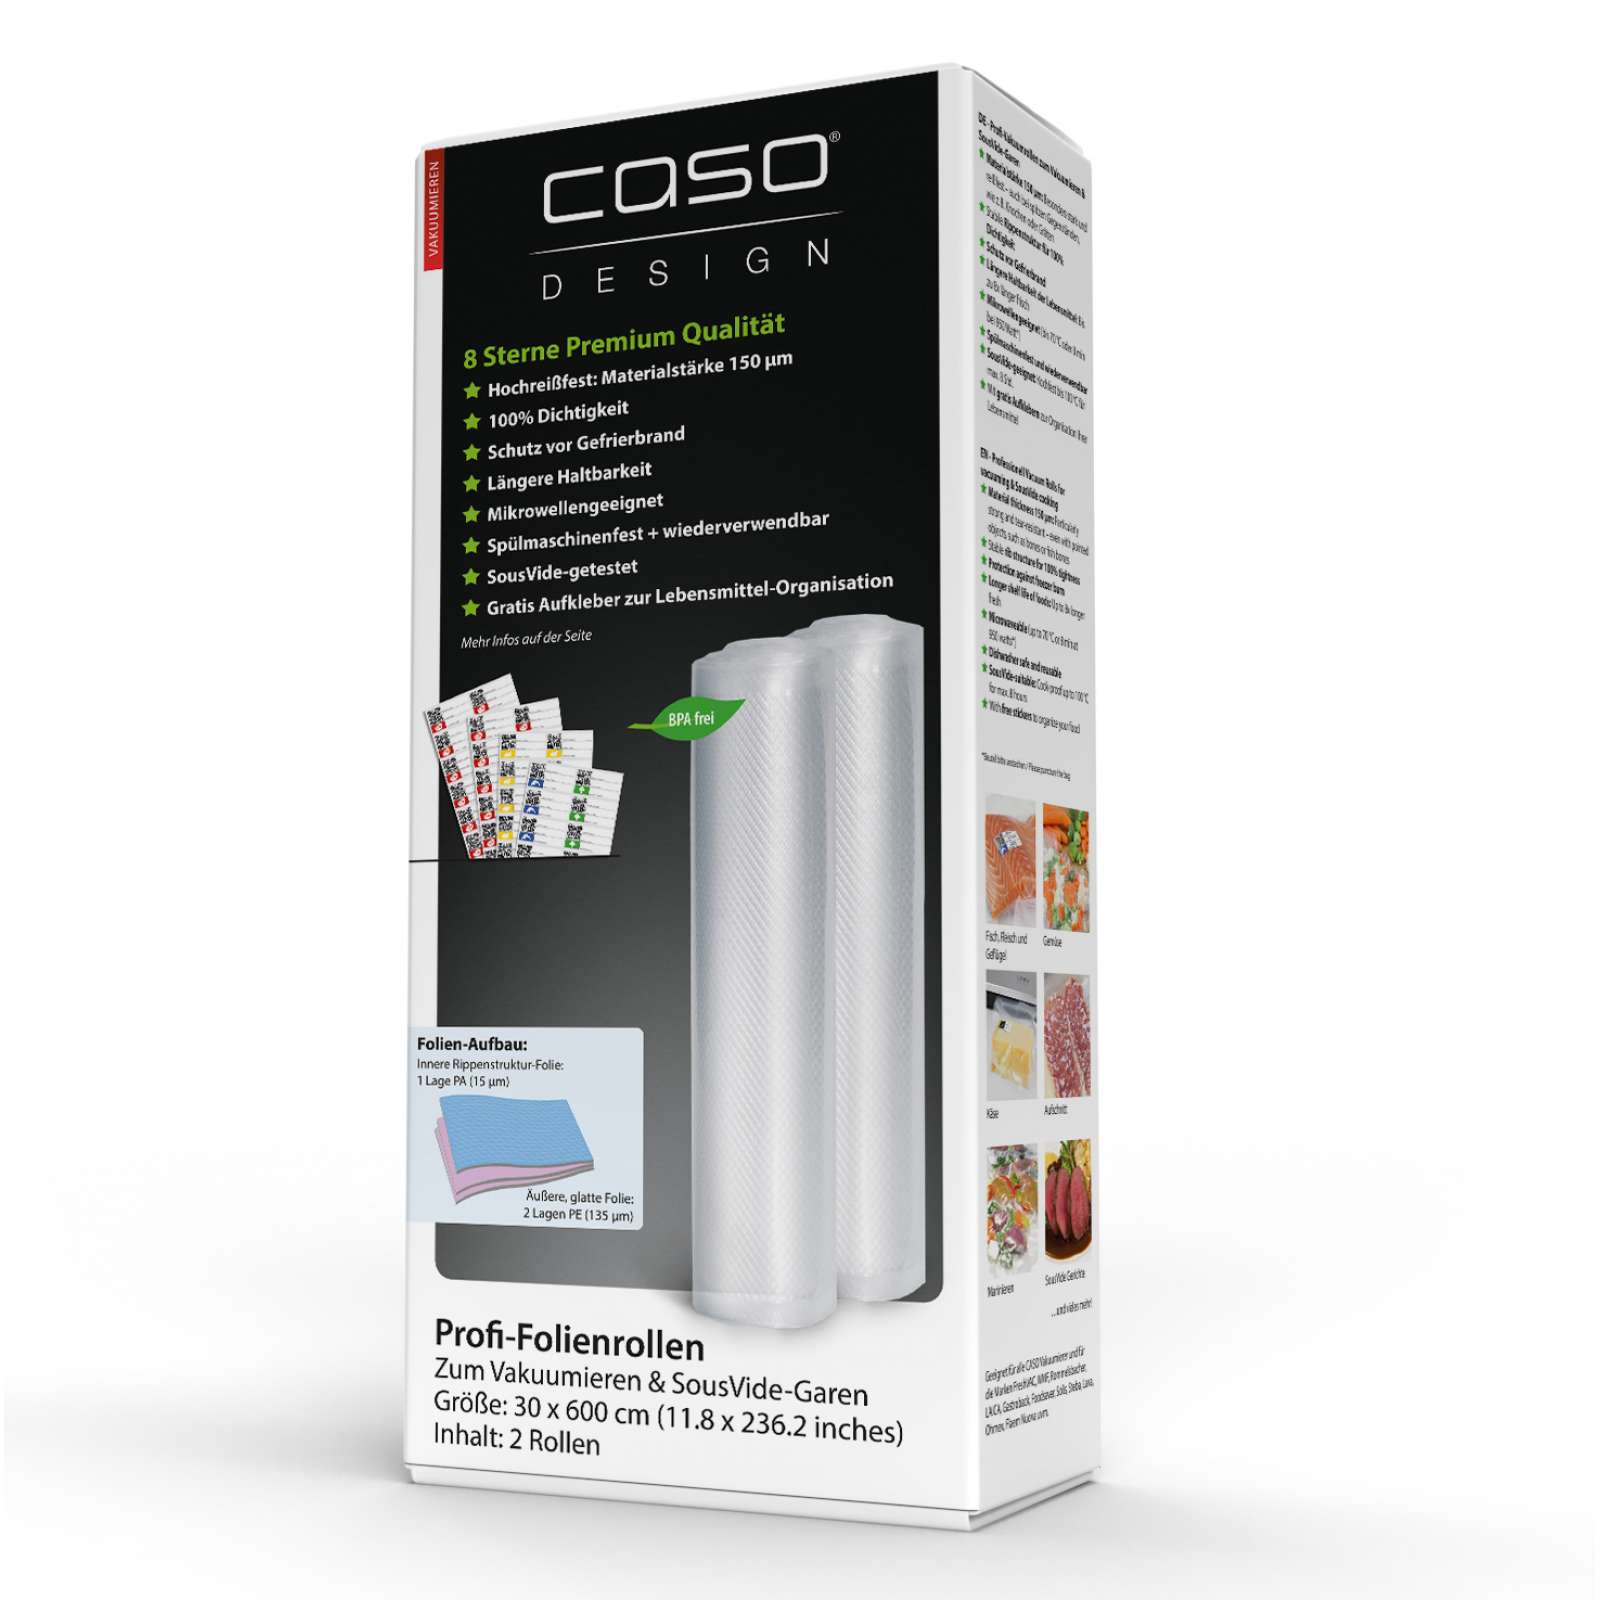 Caso Design Profi-Folienrollen 30 x 600 cm 2 Stück für Vakuumiersysteme und Sous Vide